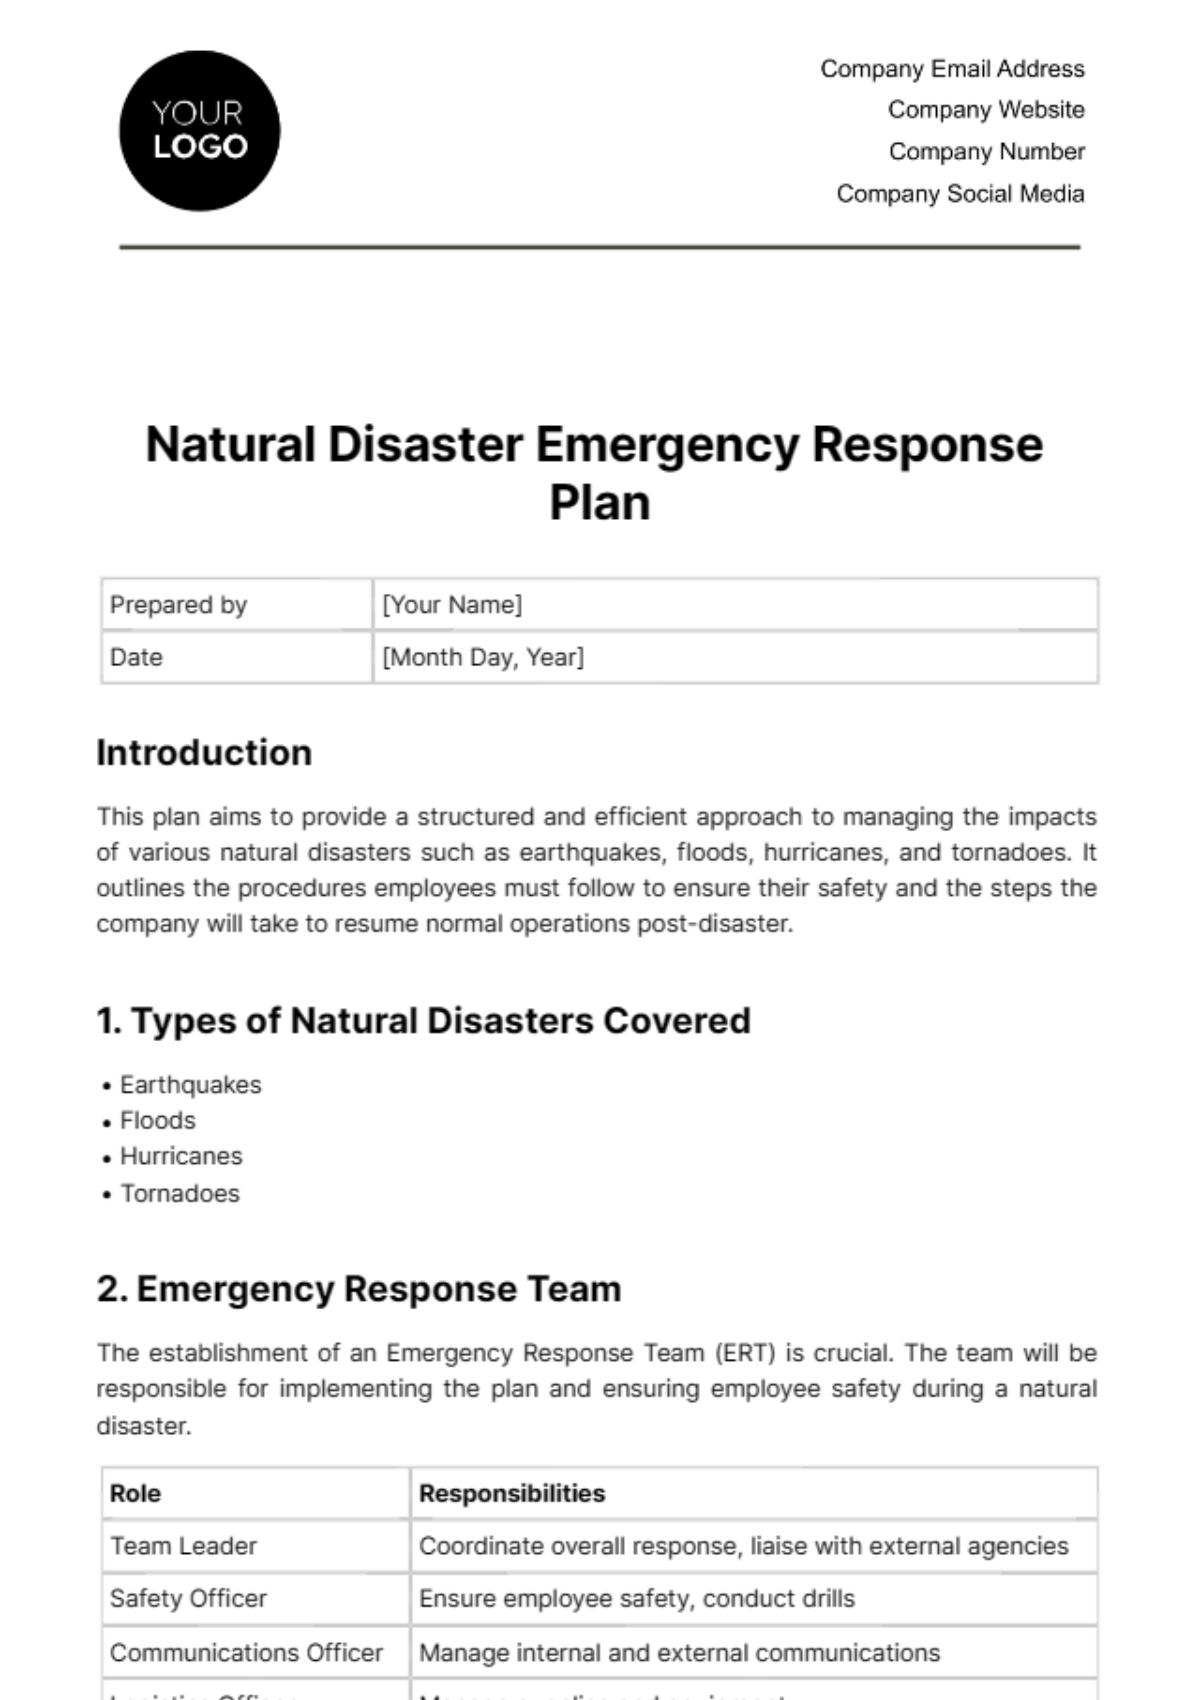 Free Natural Disaster Emergency Response Plan Template